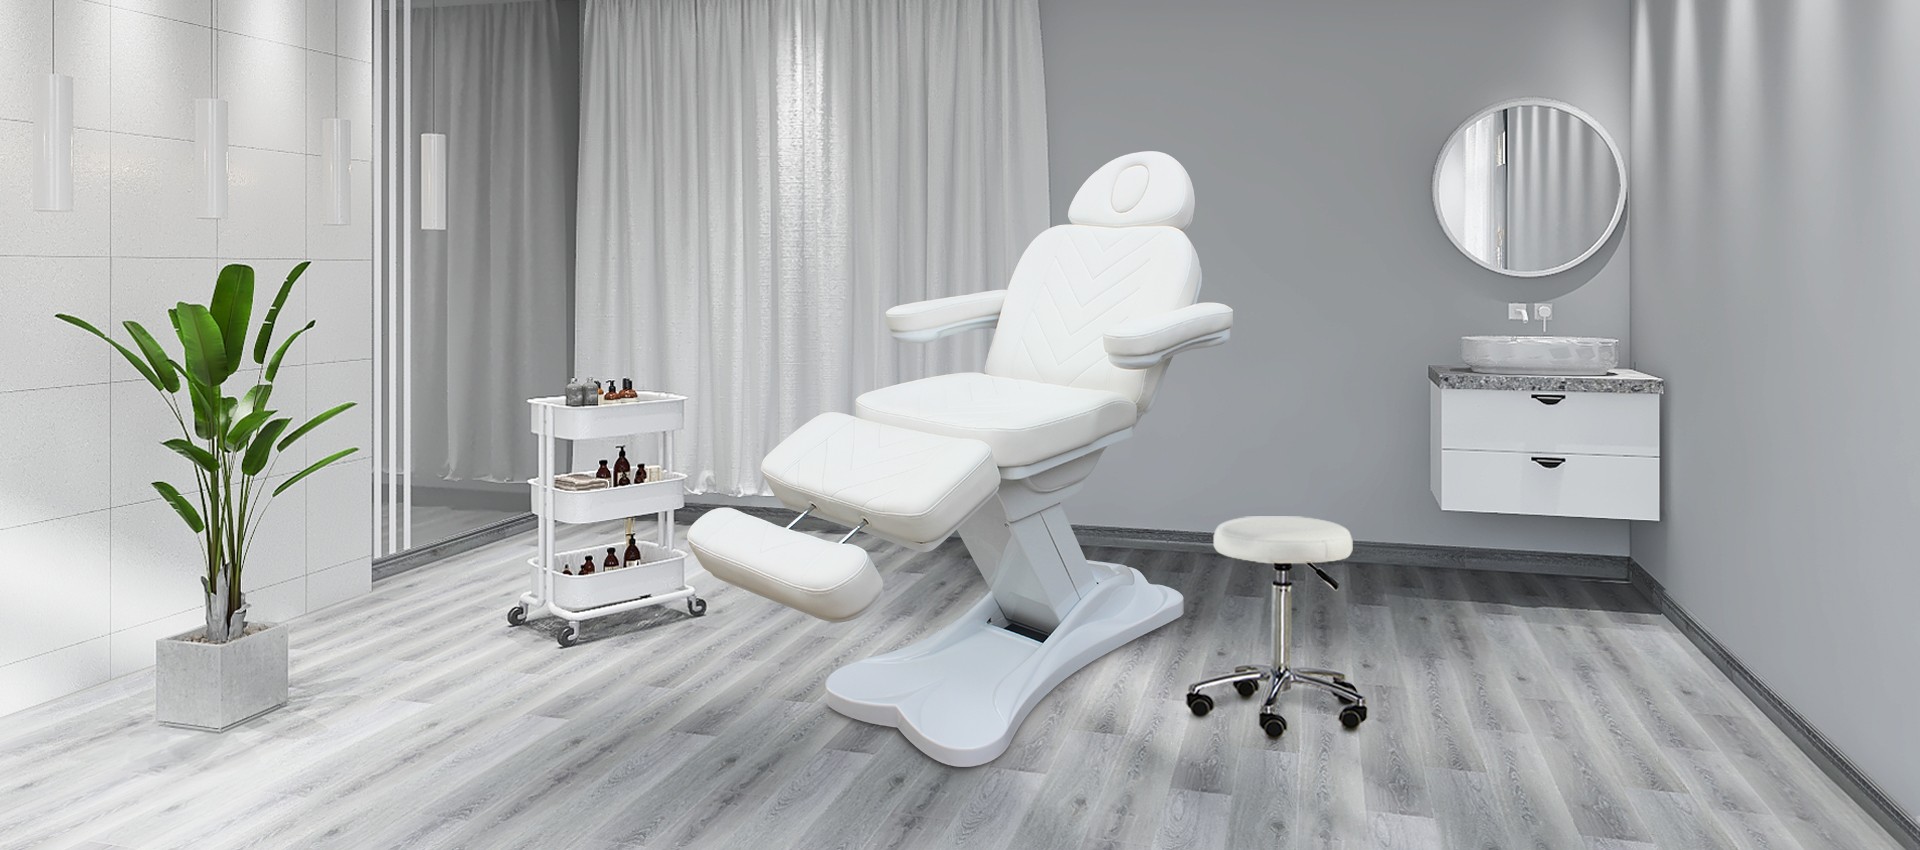 Mesa de masaje de belleza ajustable eléctrica barata con orificio